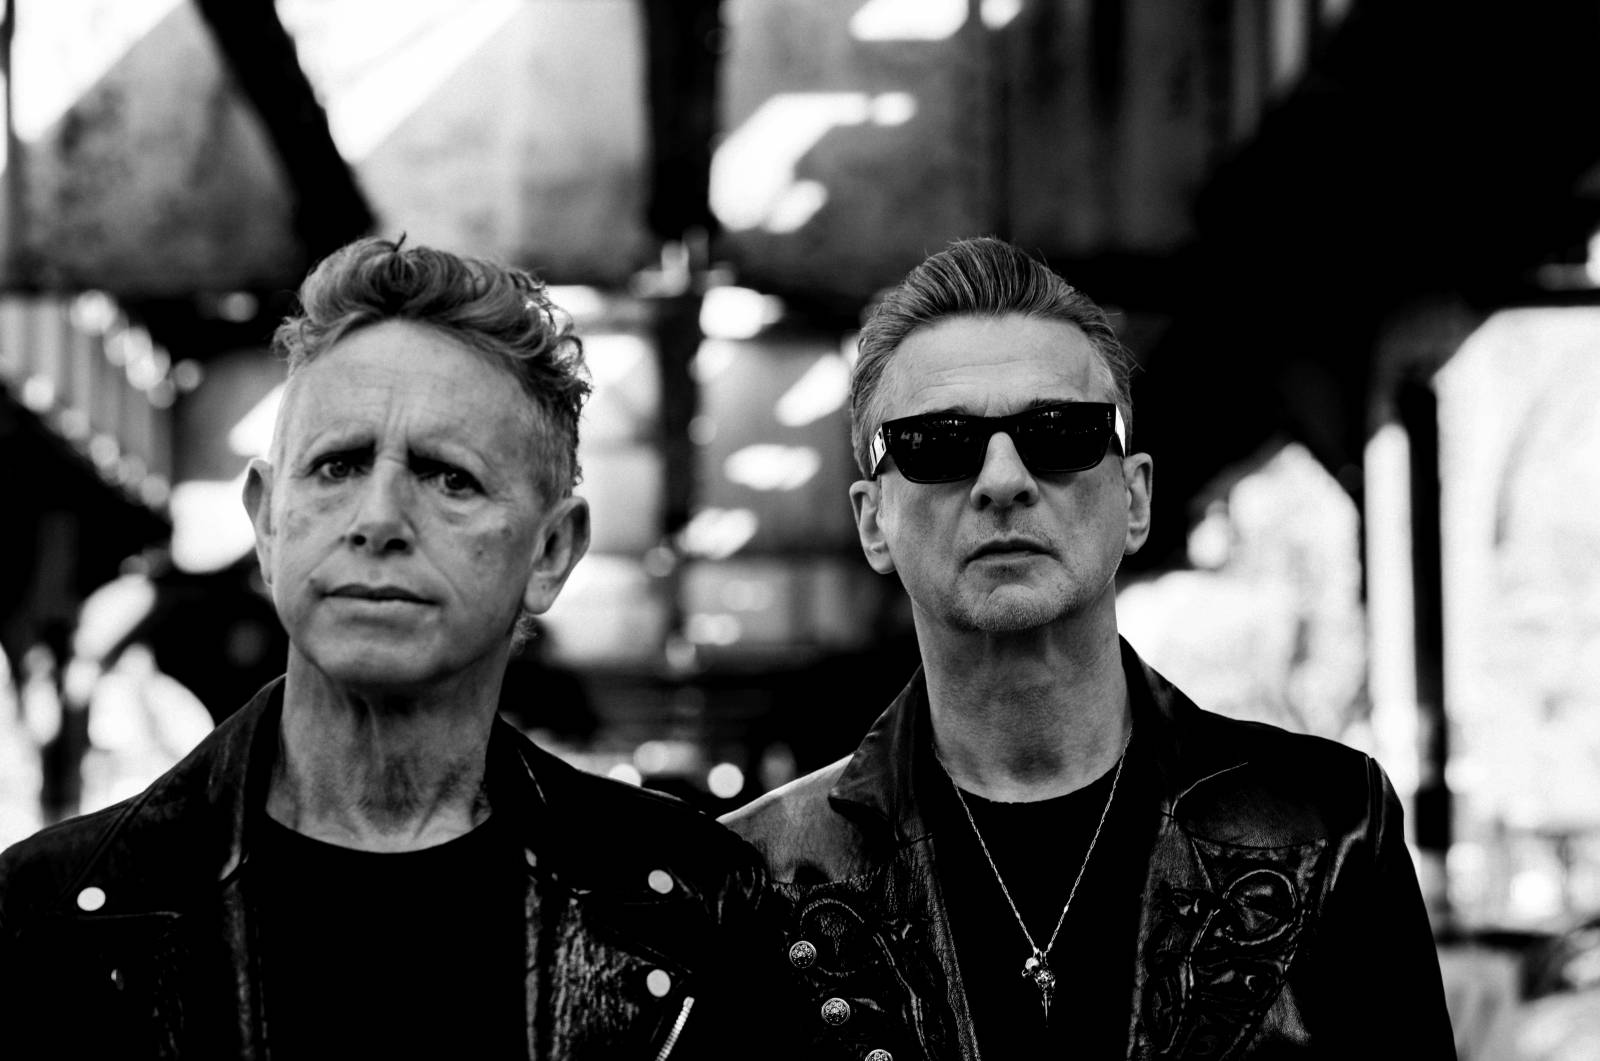 RECENZE: Depeche Mode truchlí, ale nepůsobí sklesle